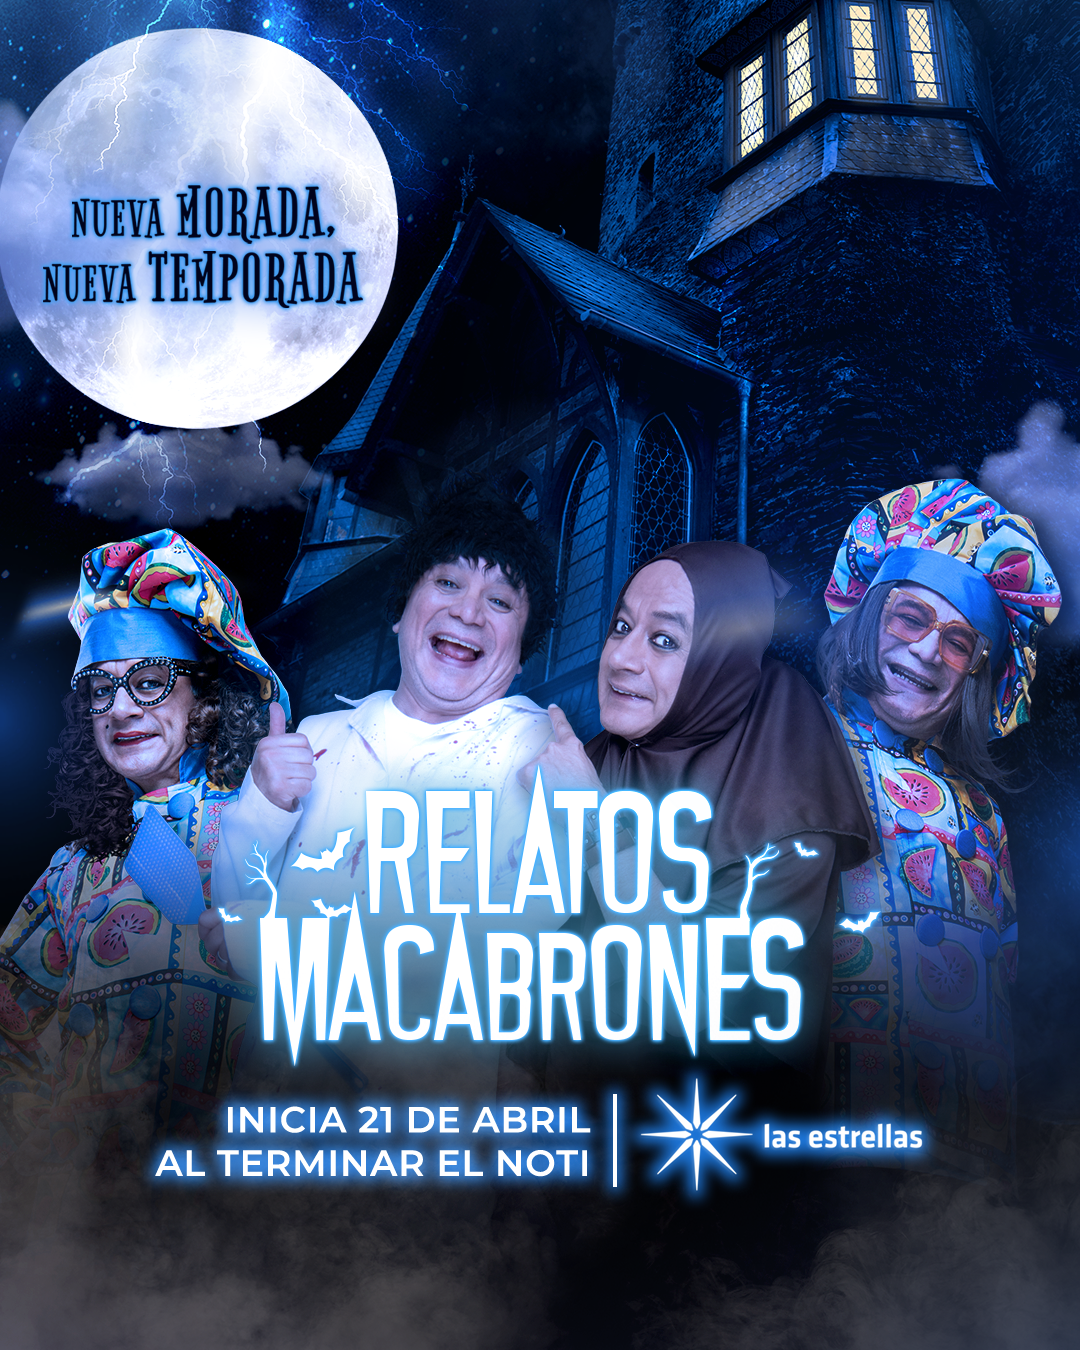 Este viernes 21 de abril será el estreno de la 6ª temporada de “Relatos Macabrones”